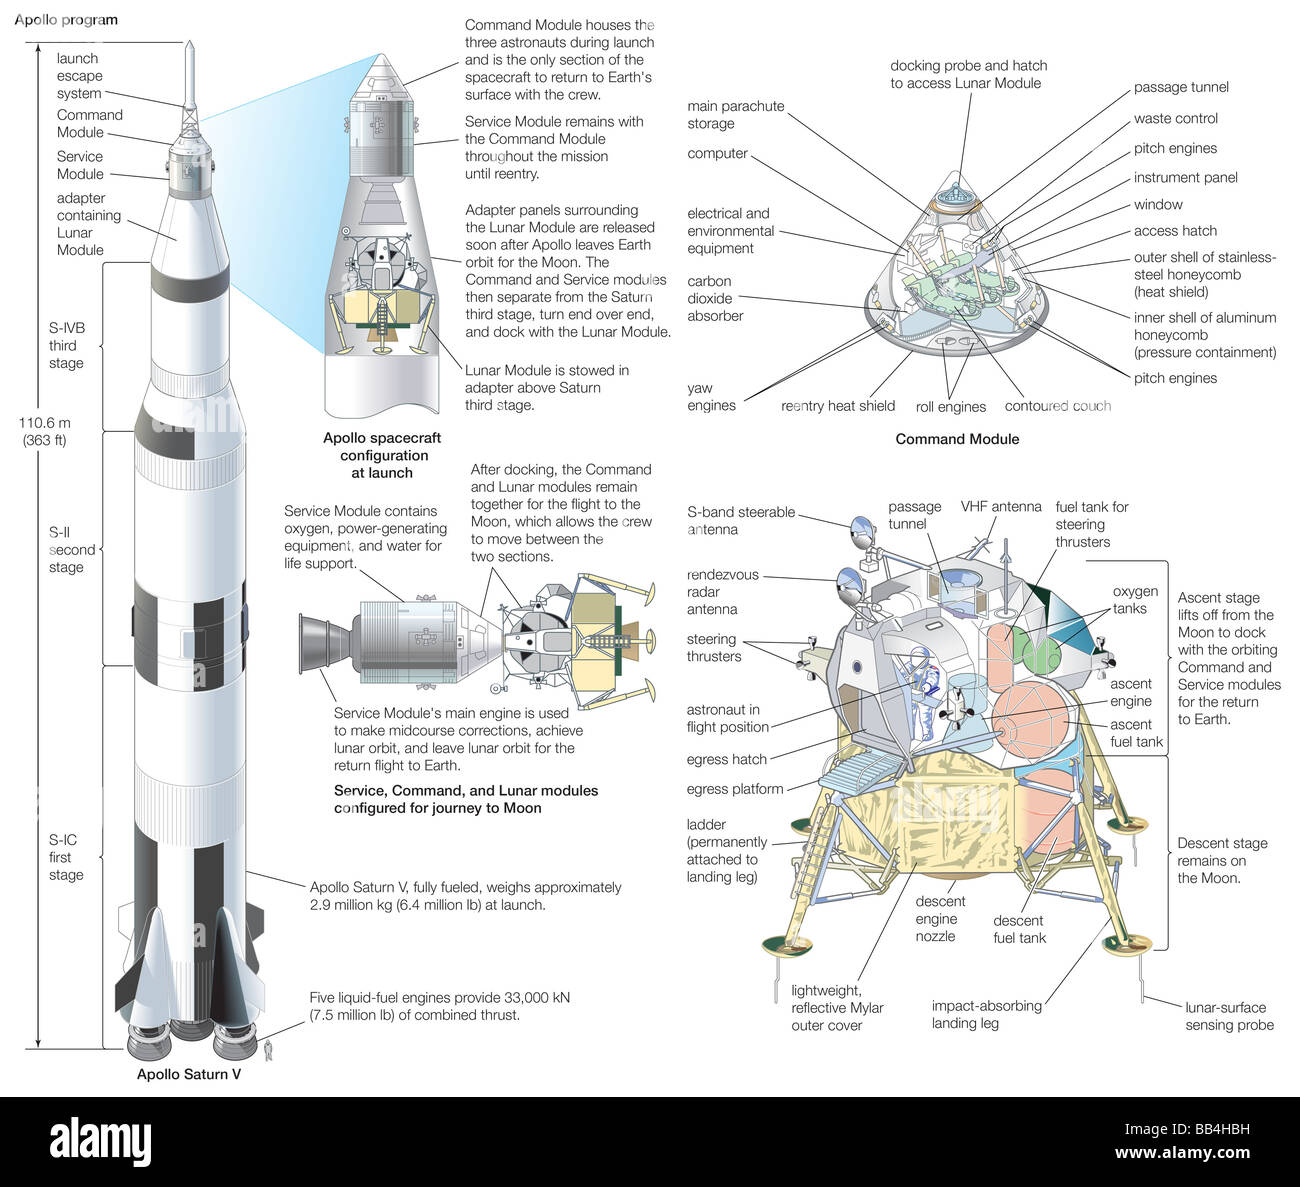 Il programma Apollo: il Saturn V del veicolo di lancio e le configurazioni dei moduli di veicolo spaziale al momento del lancio e durante il viaggio. Foto Stock